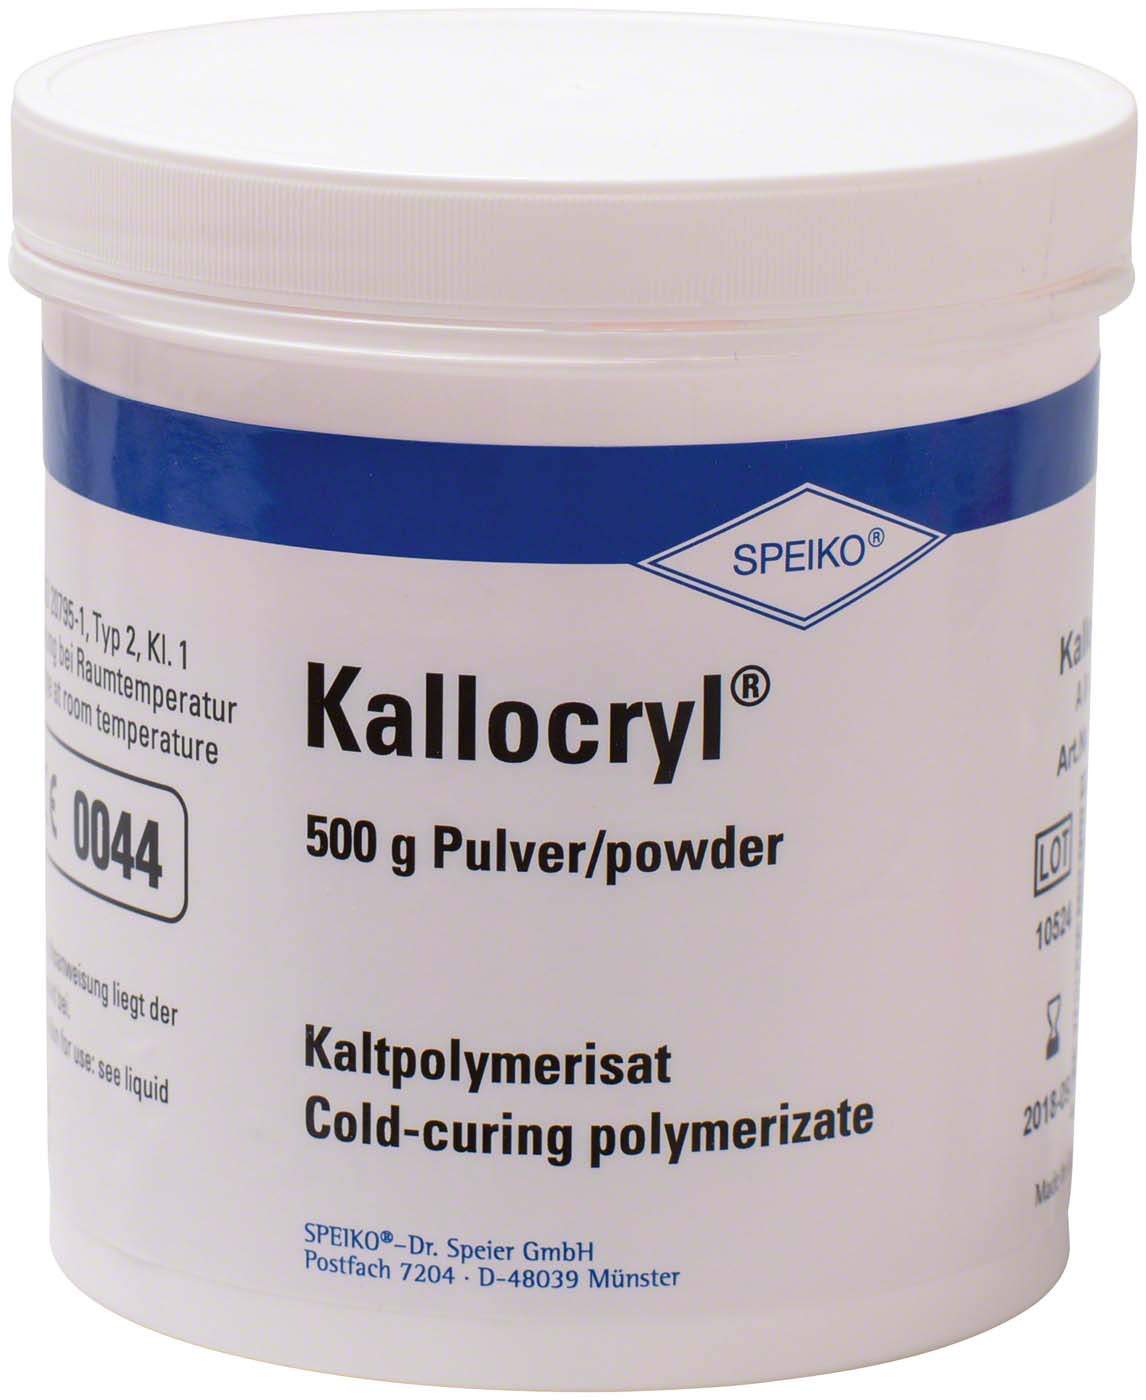 Kallocryl® A/C SPEIKO